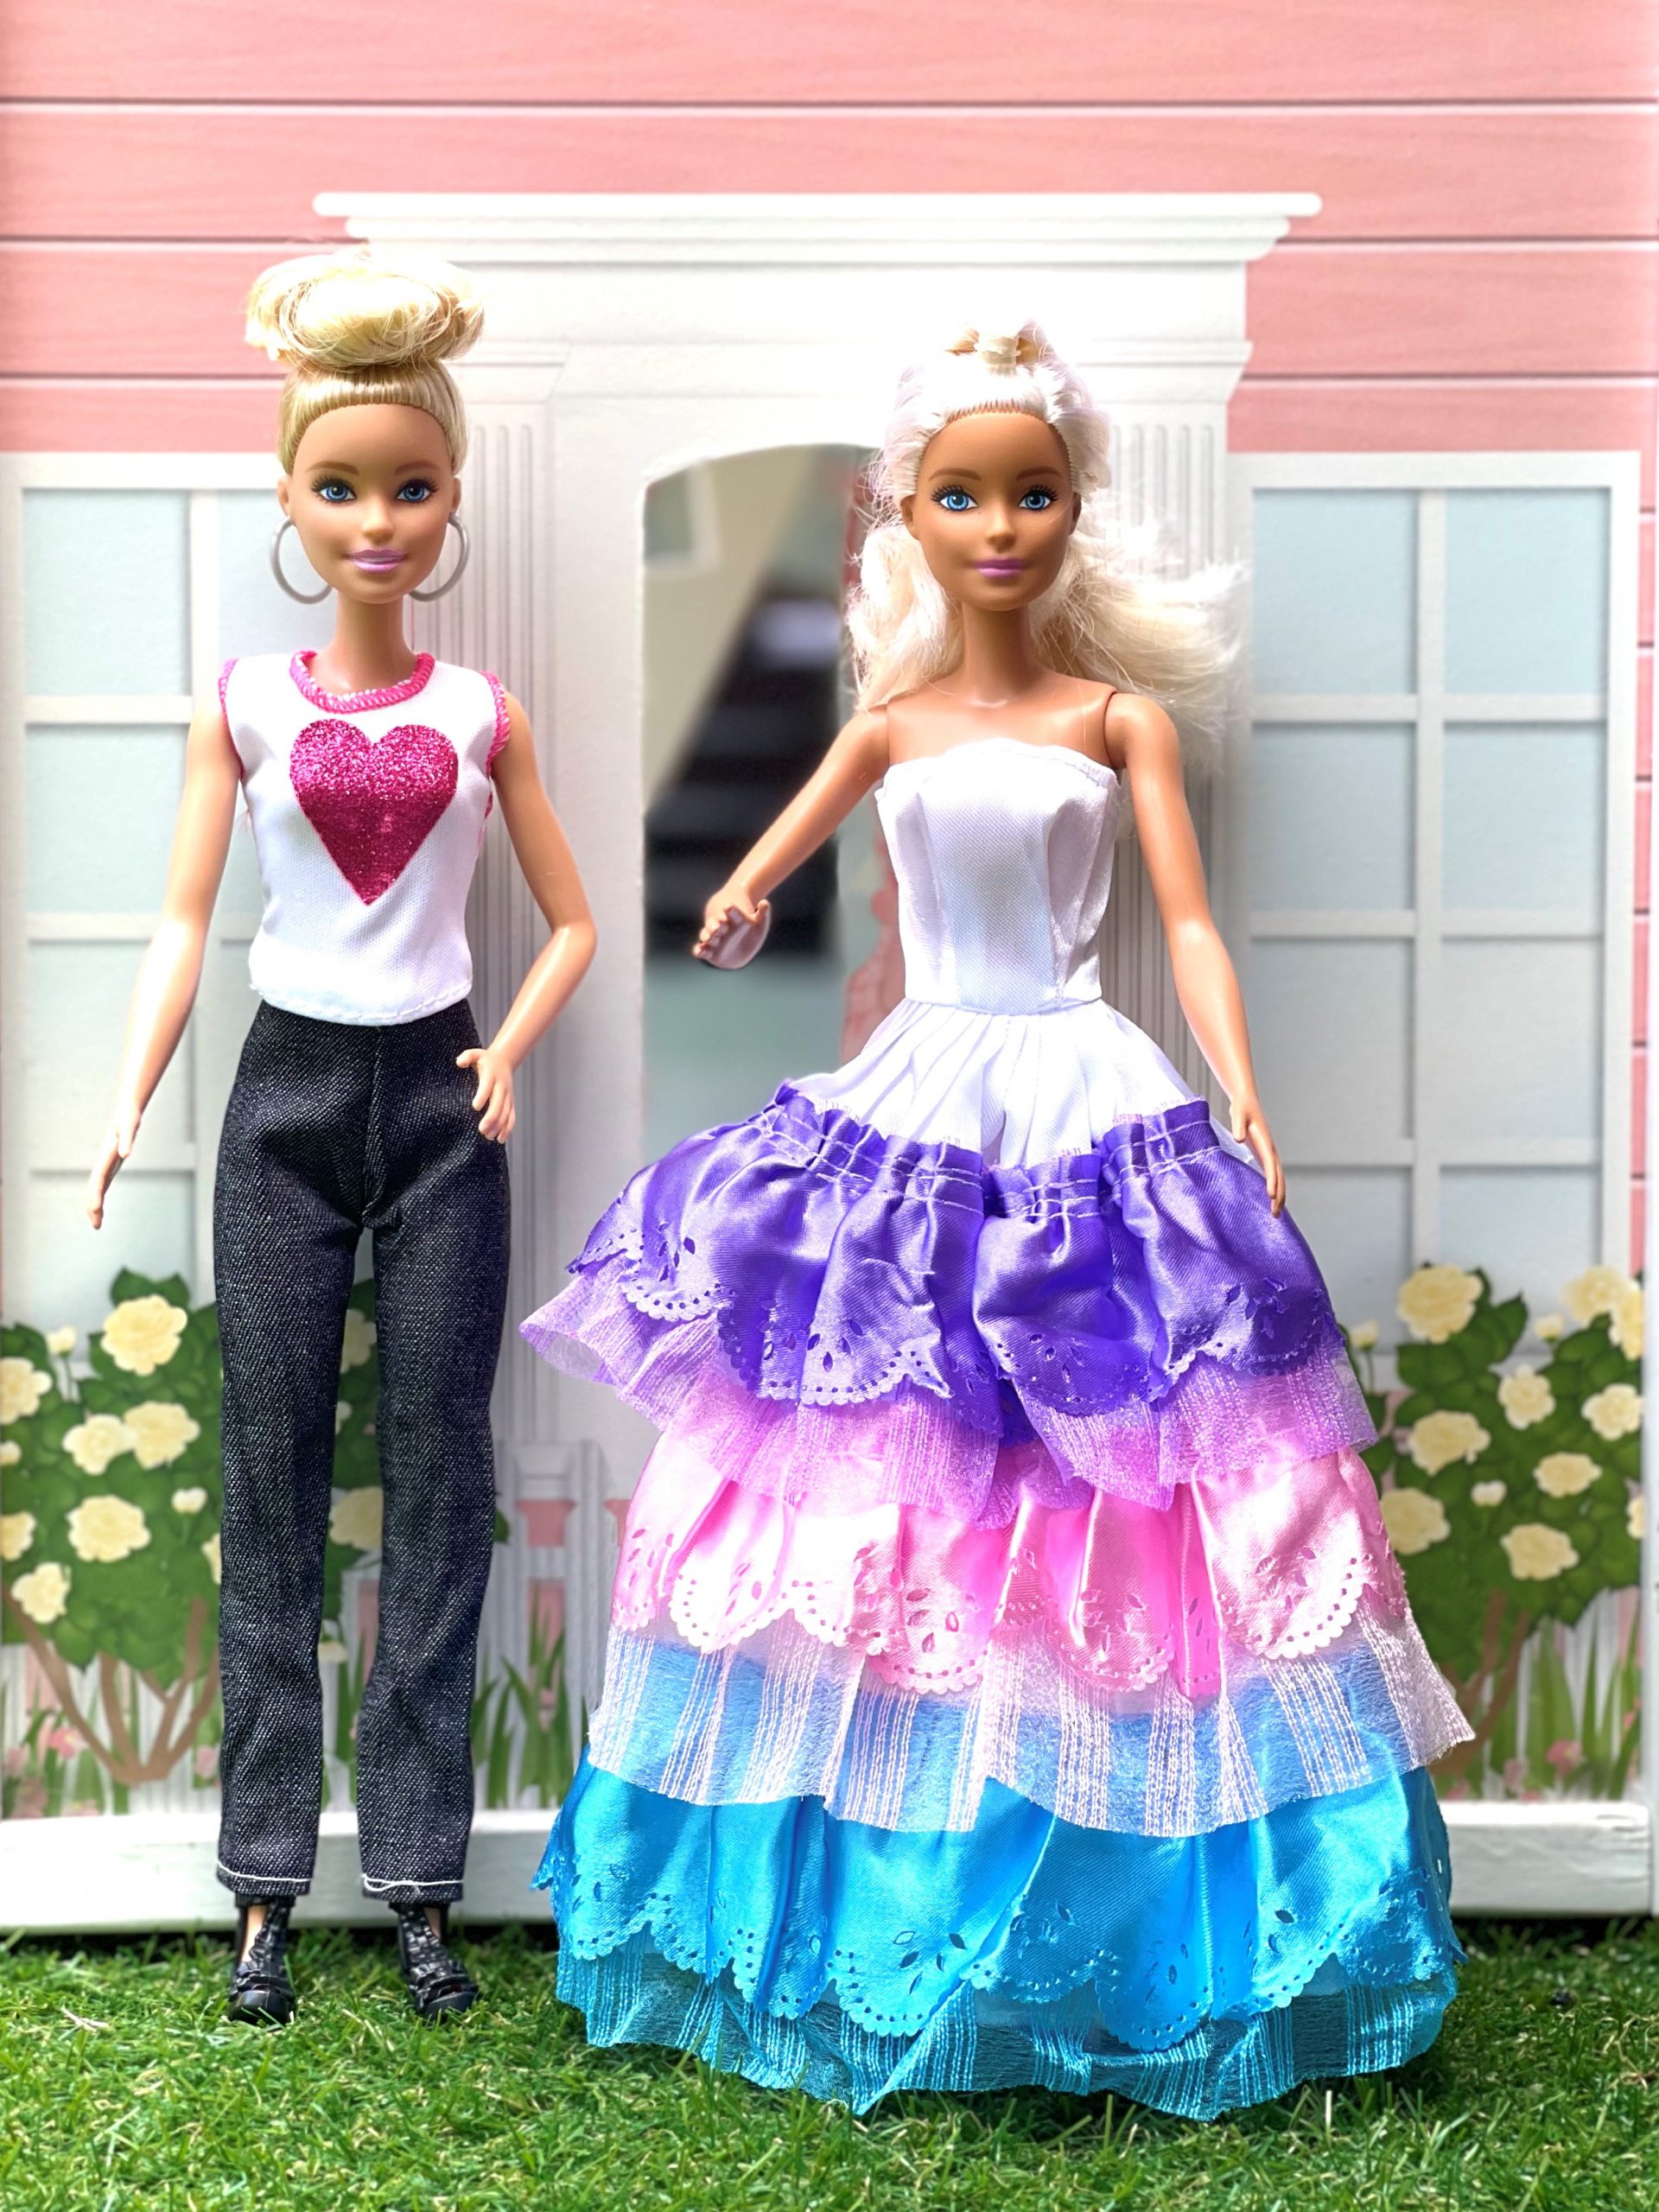 hongersnood levering aan huis zwavel 10 fashion outfits voor modepoppen inclusief barbie schoenen – cioves.nl